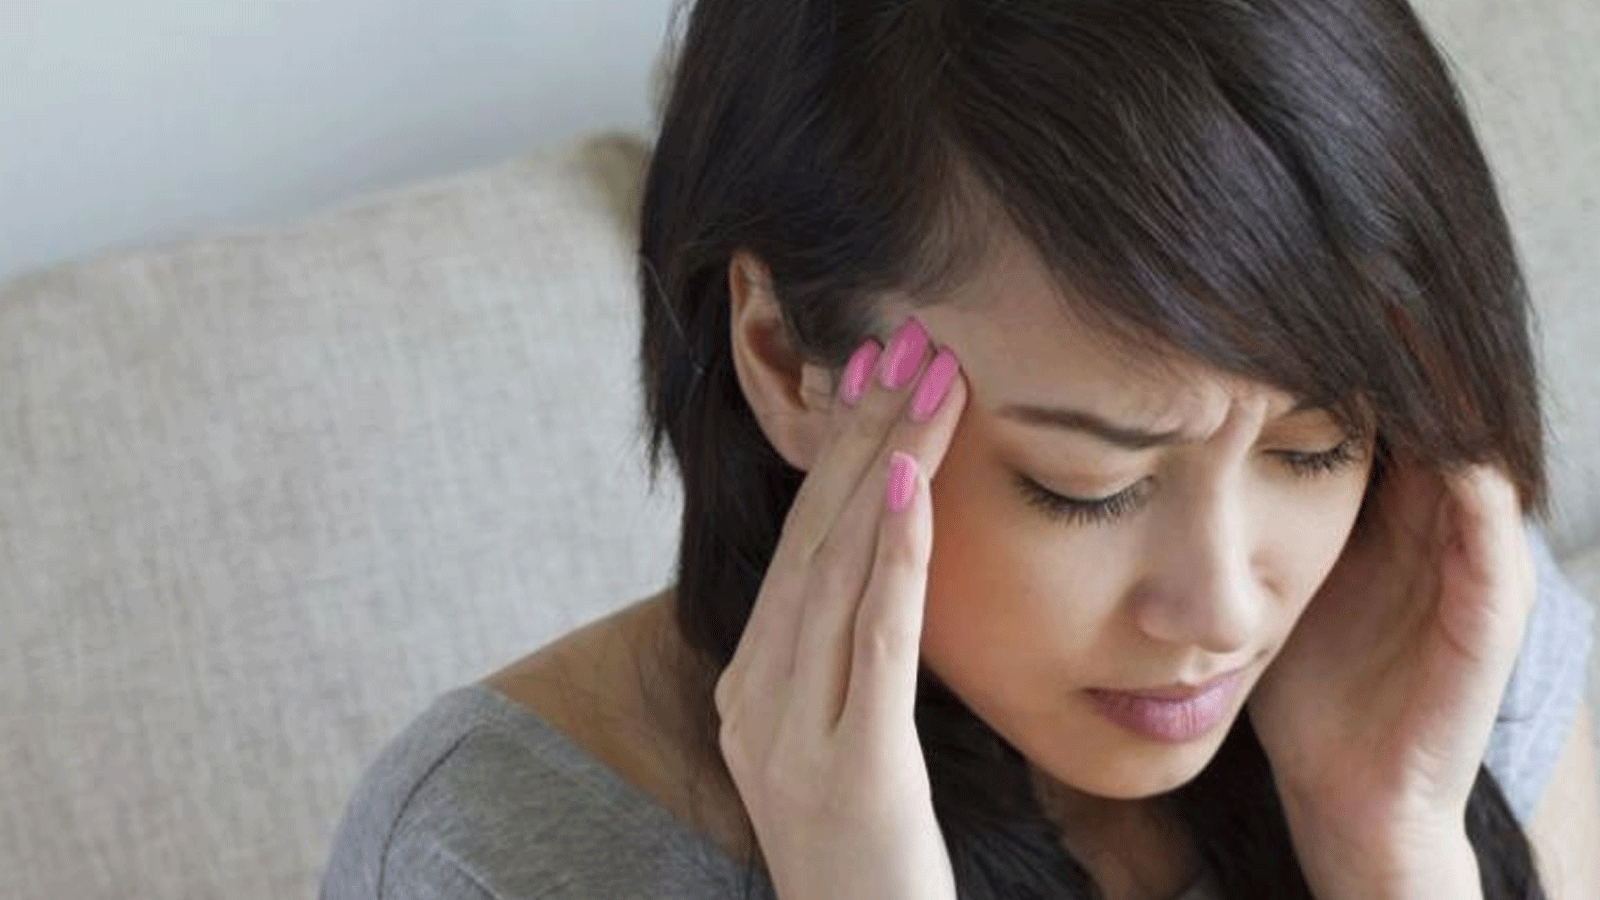 اضطراب الهرمونات قد يسبب وجع الرأس وفقدان التركيز